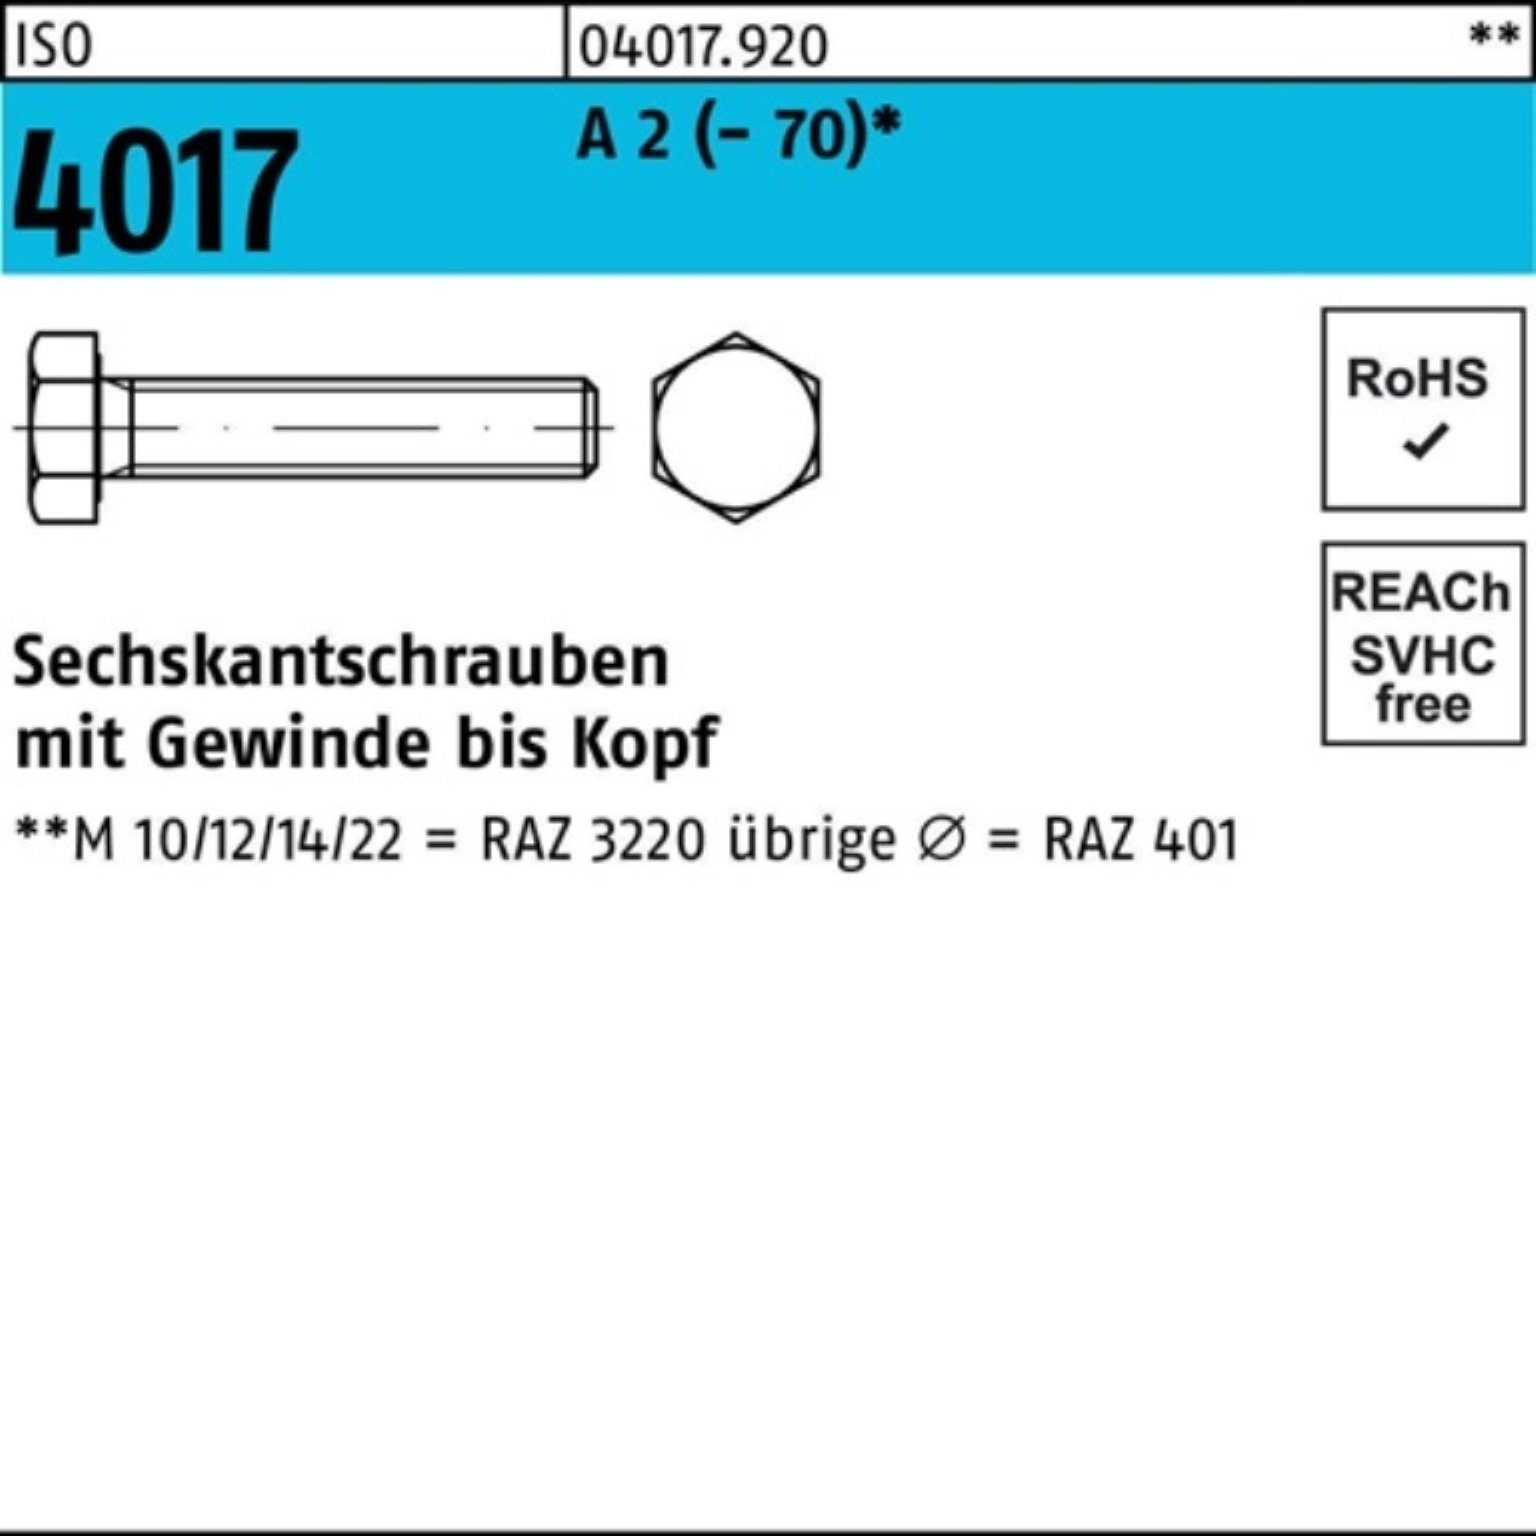 M22x Bufab ISO 1 A Sechskantschraube 100er 2 4017 (70) I Pack Sechskantschraube VG 55 Stück